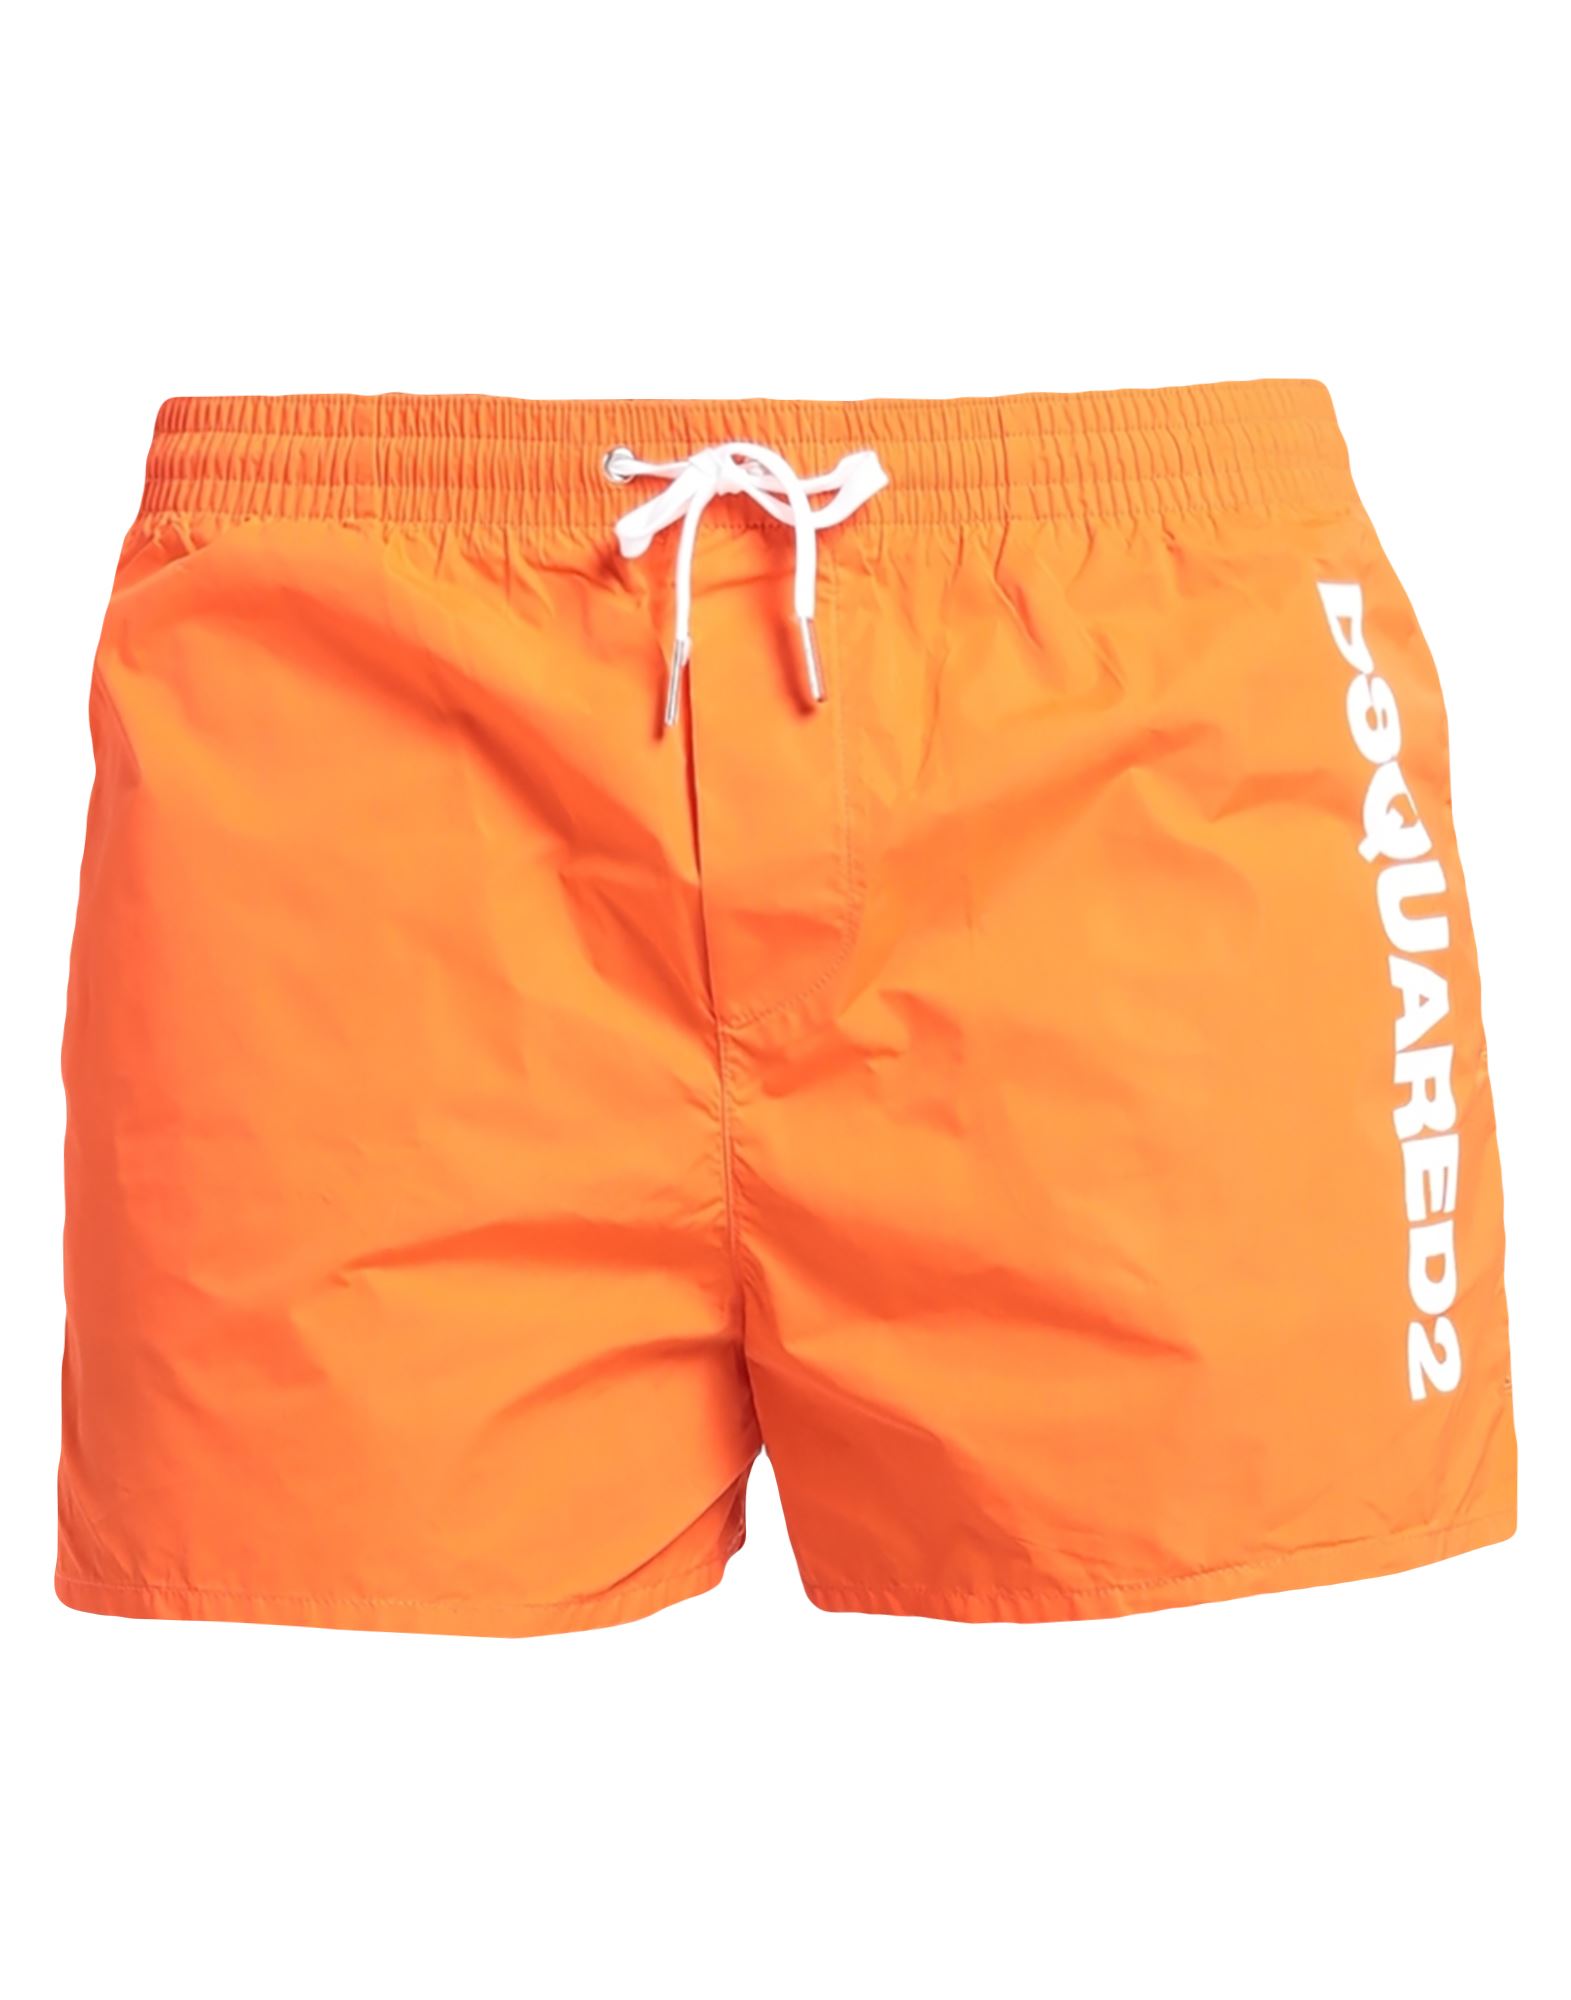 Dsquared2 Swim Trunks In Orange